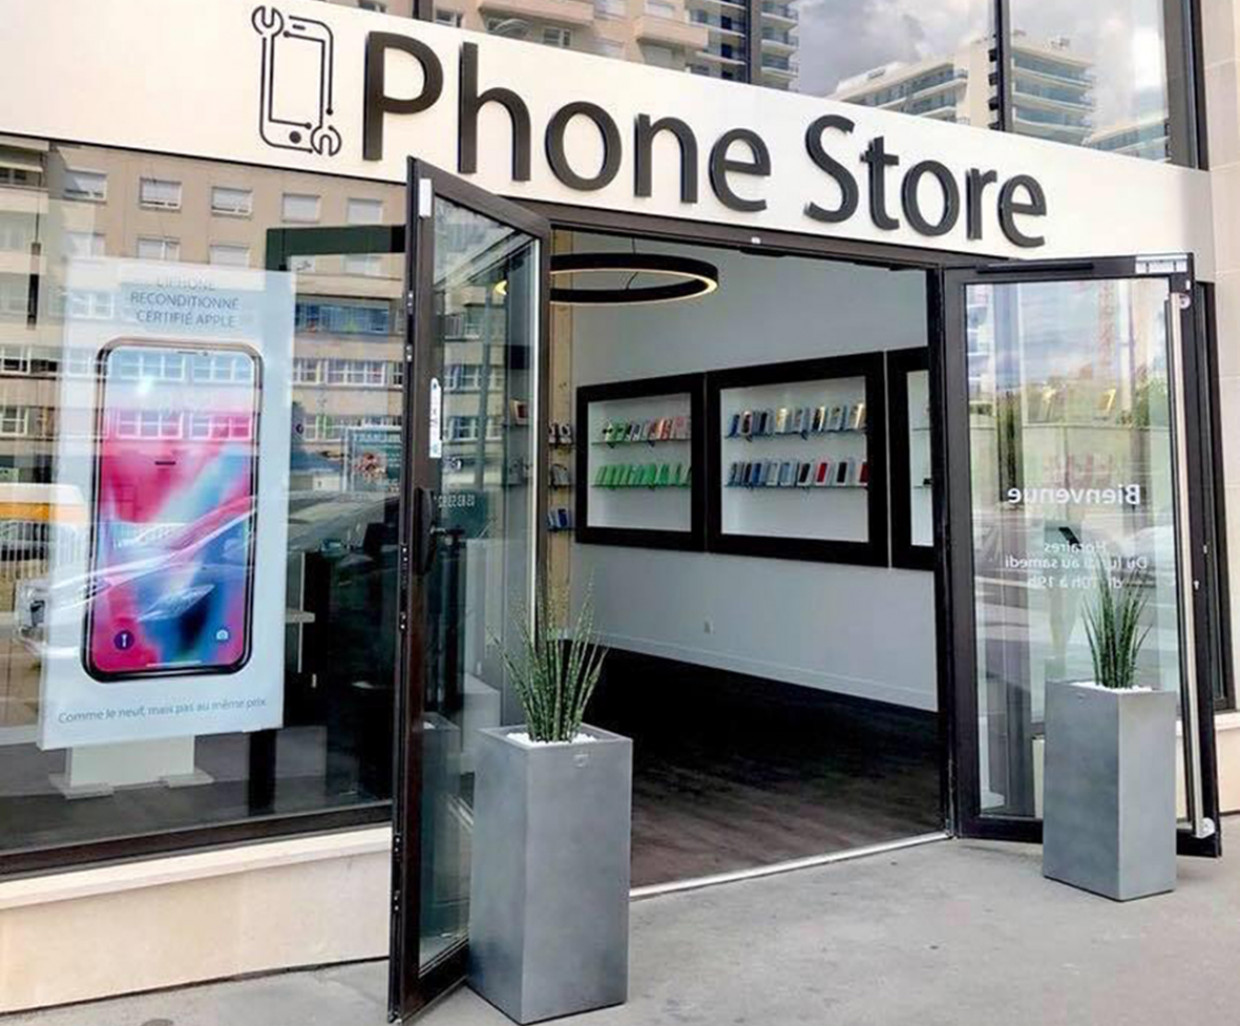 Phone Store est la première boutique installée dans le nouveau quartier Nancy Grand Cœur.